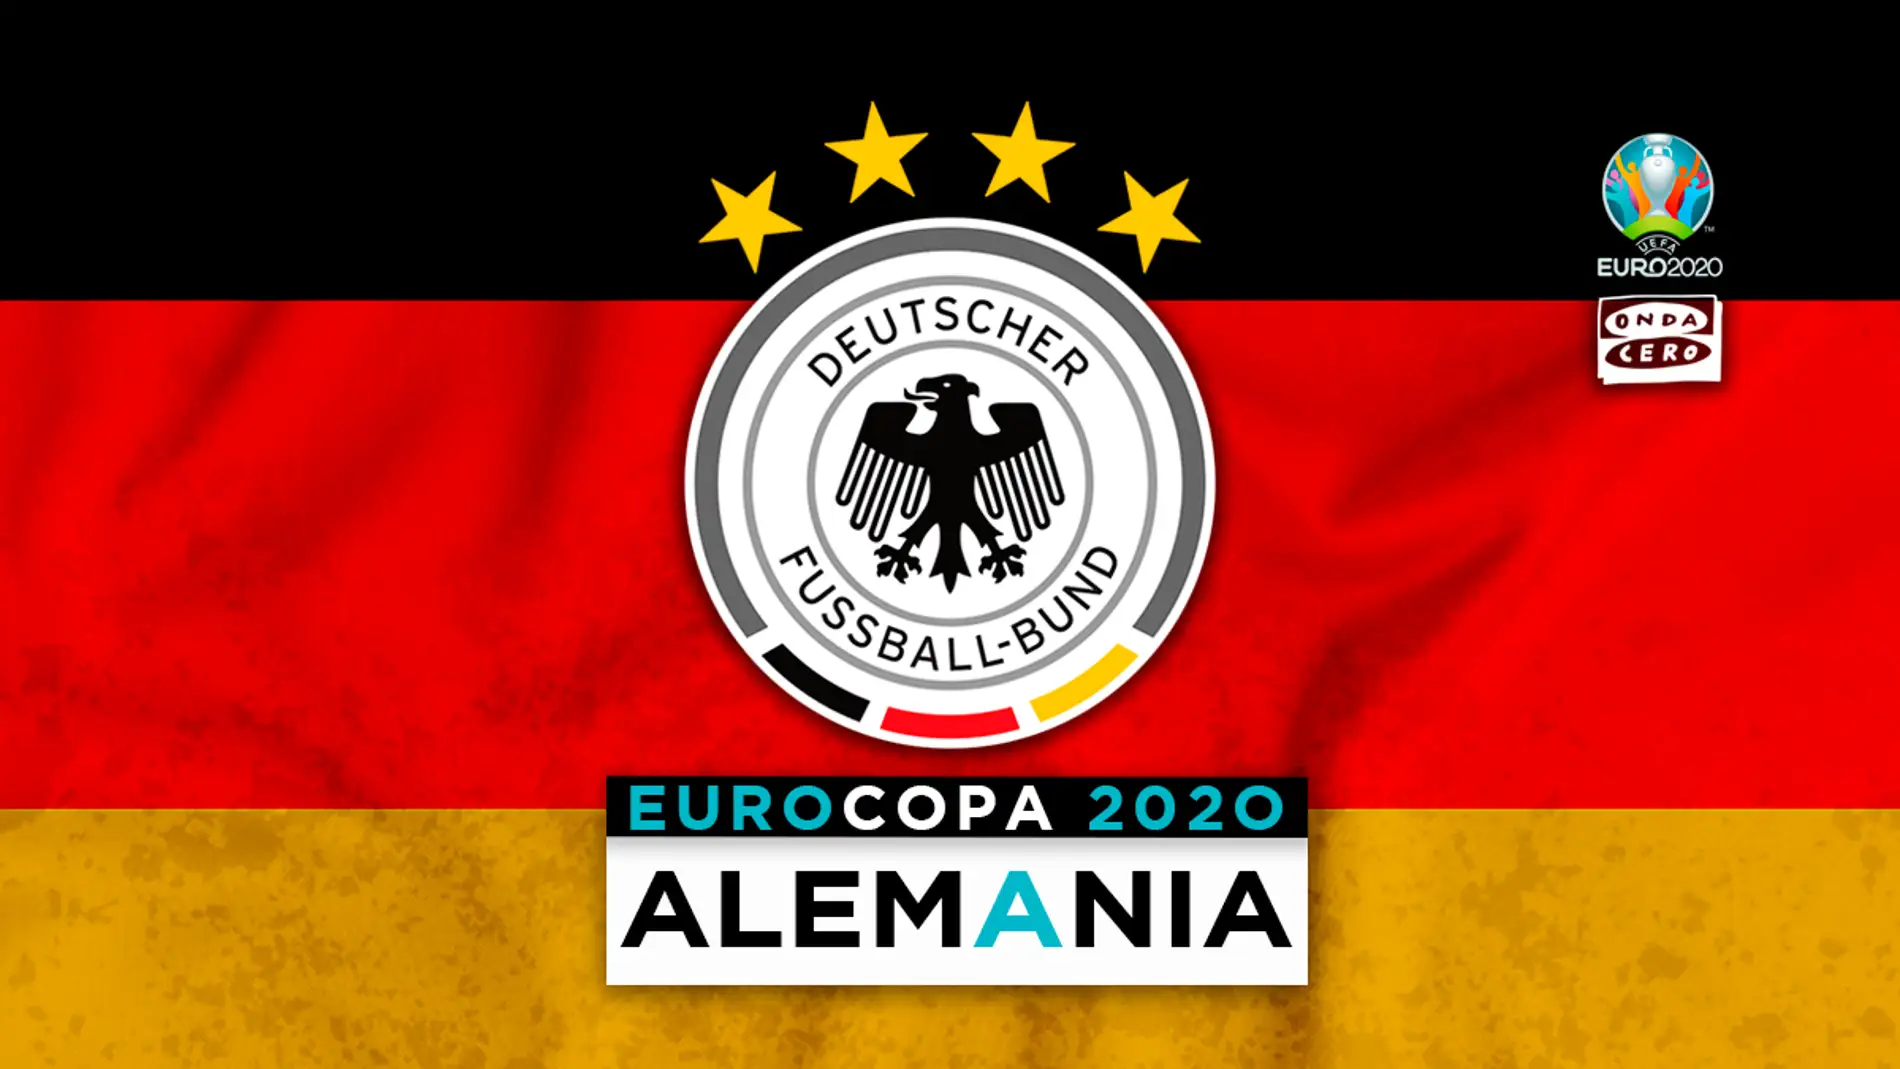 Alemania en la Eurocopa: alineación probable, convocatoria y lista completa de jugadores